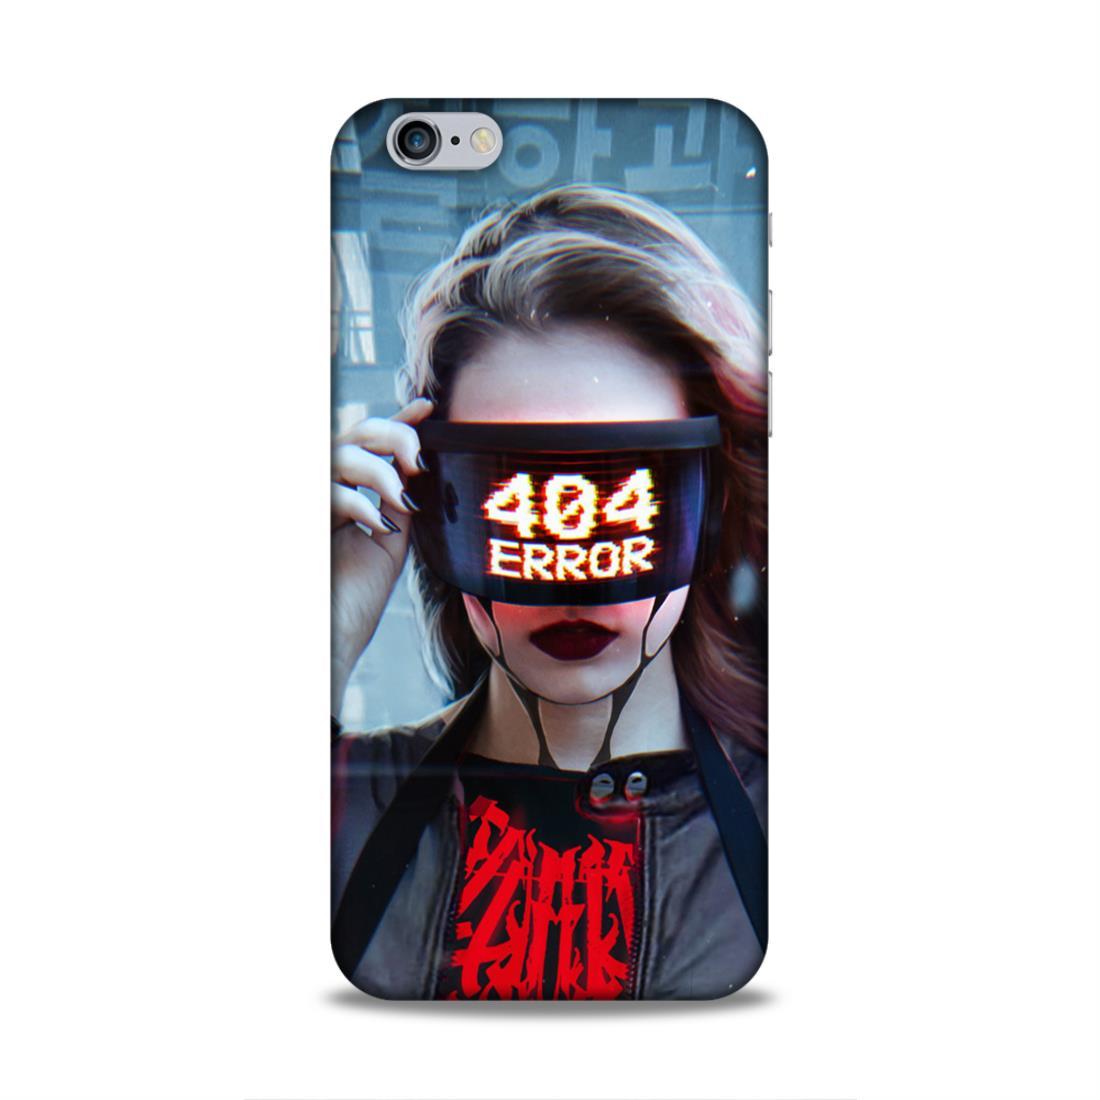 404 Error iPhone 6 Phone Cover